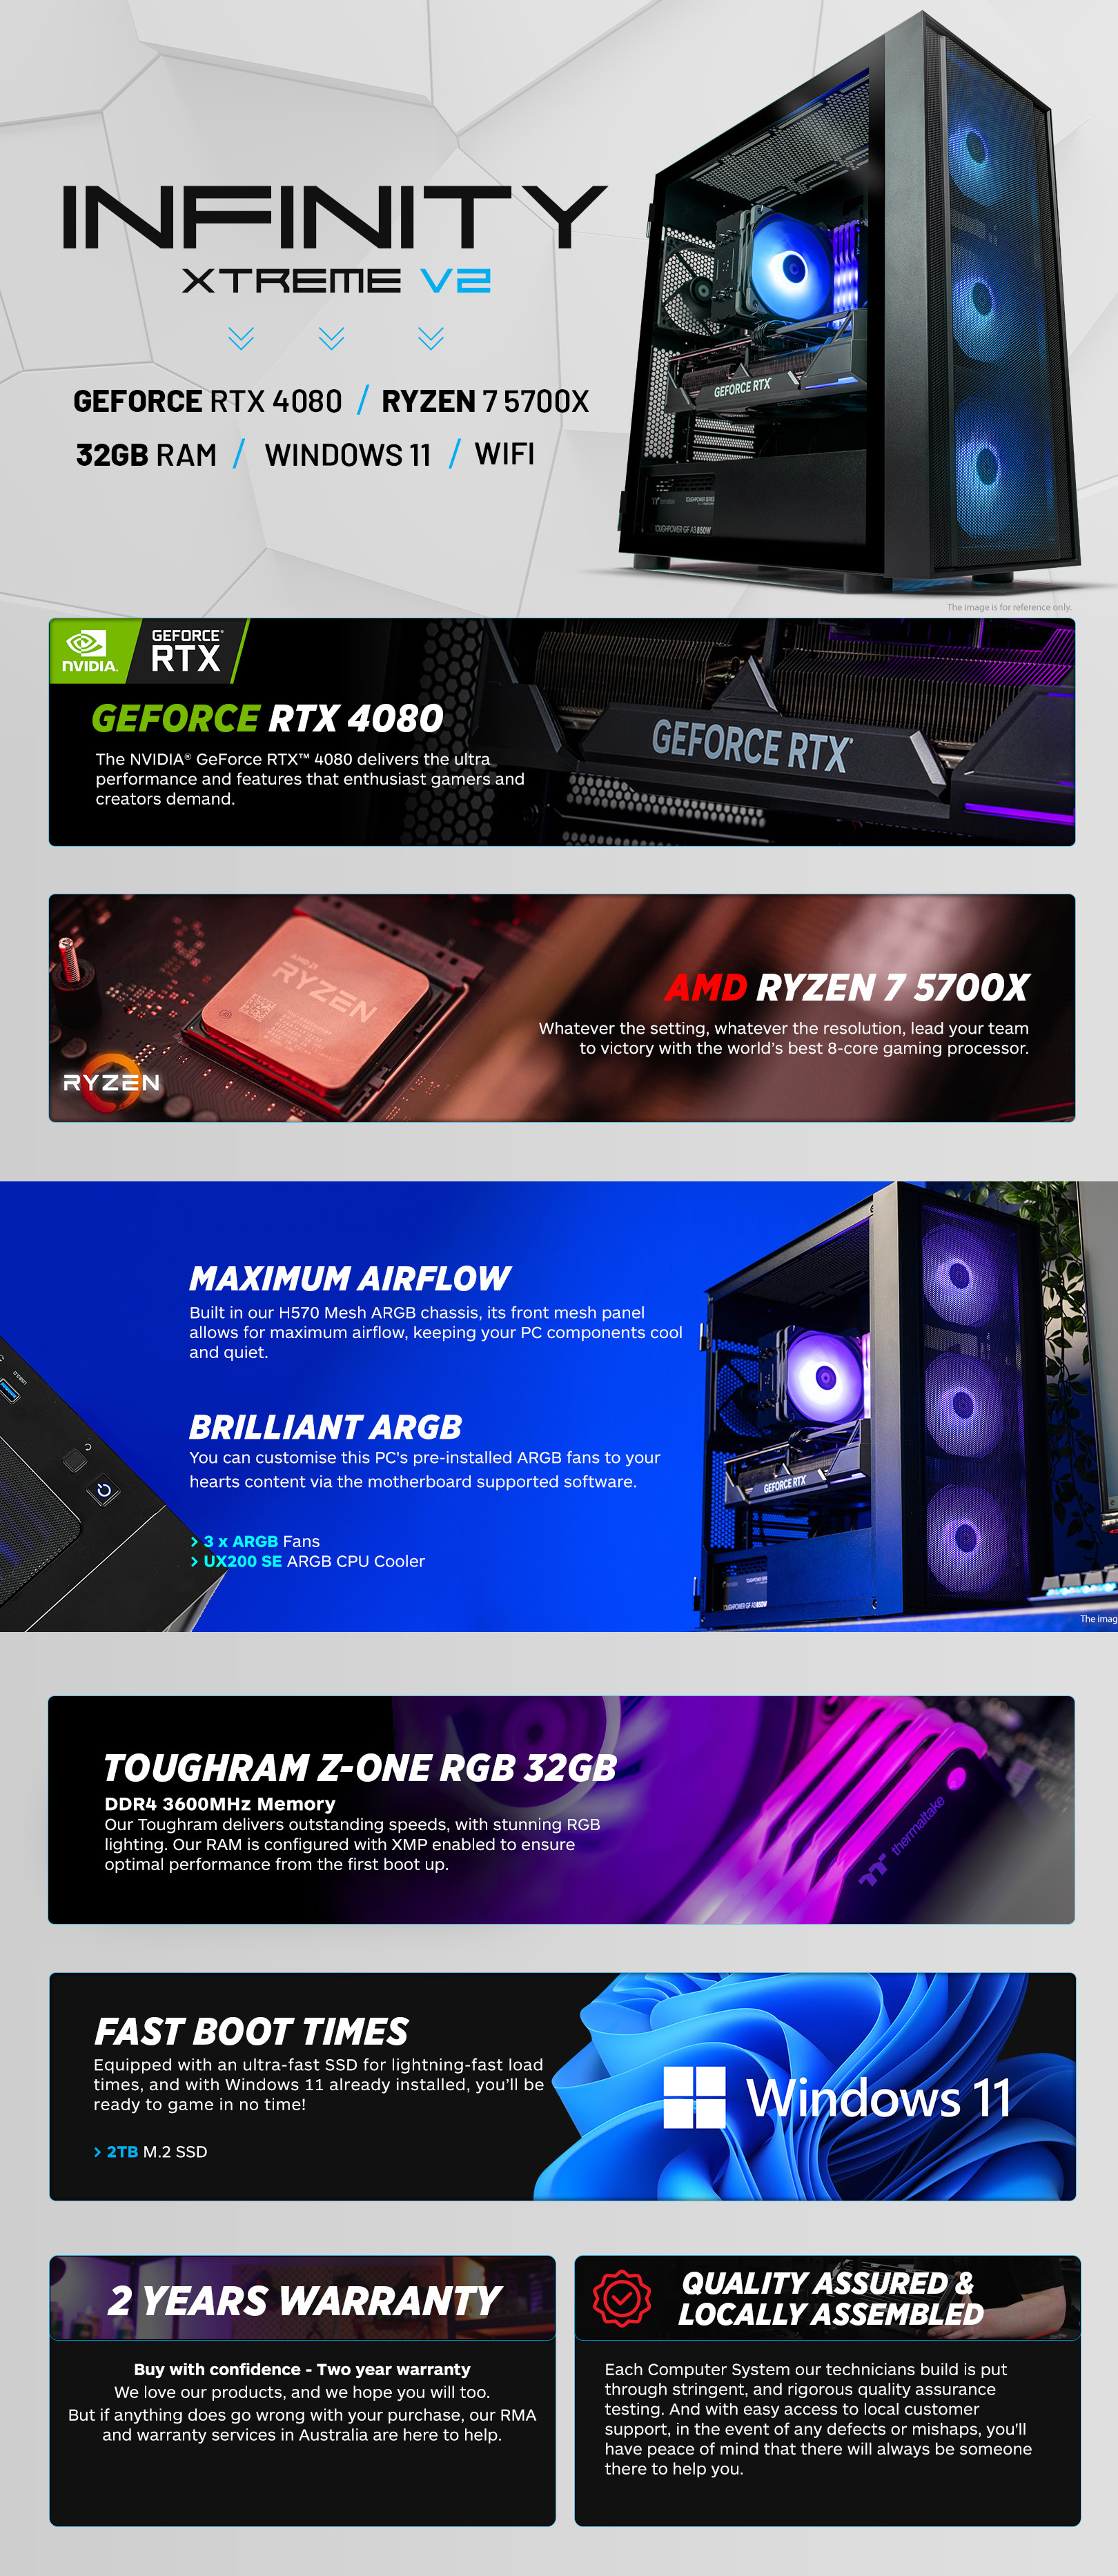 Branded-Gaming-PCs-Thermaltake-Infinity-Xtreme-V2-R7-5700X-RTX-4080-2TB-SSD-32GB-RAM-W11H-Gaming-PC-CA-4J2-00D1WA-A0-1